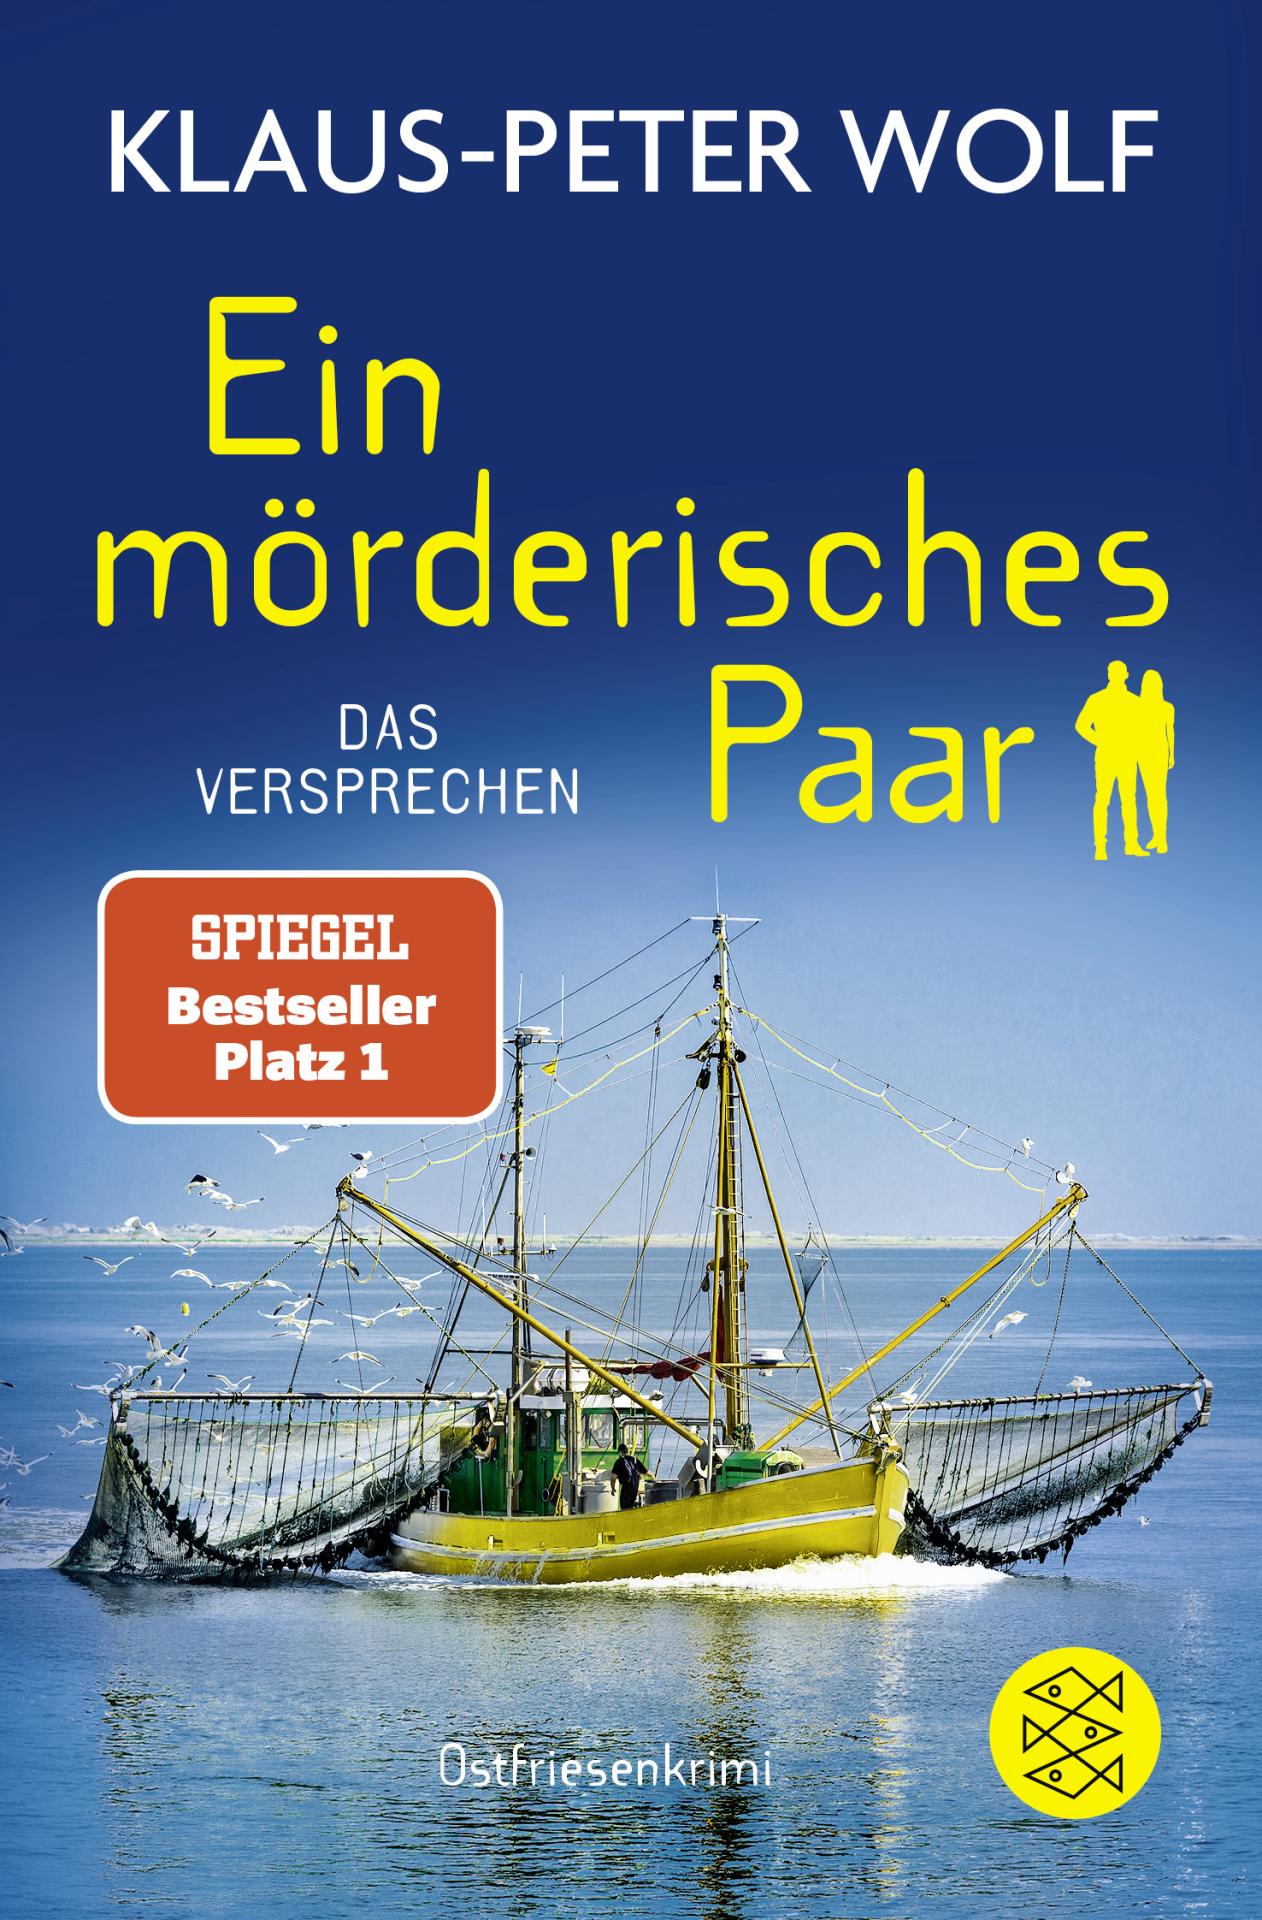 Cover zum aktuellen Buch "Das Versprechen". Foto: Verlag